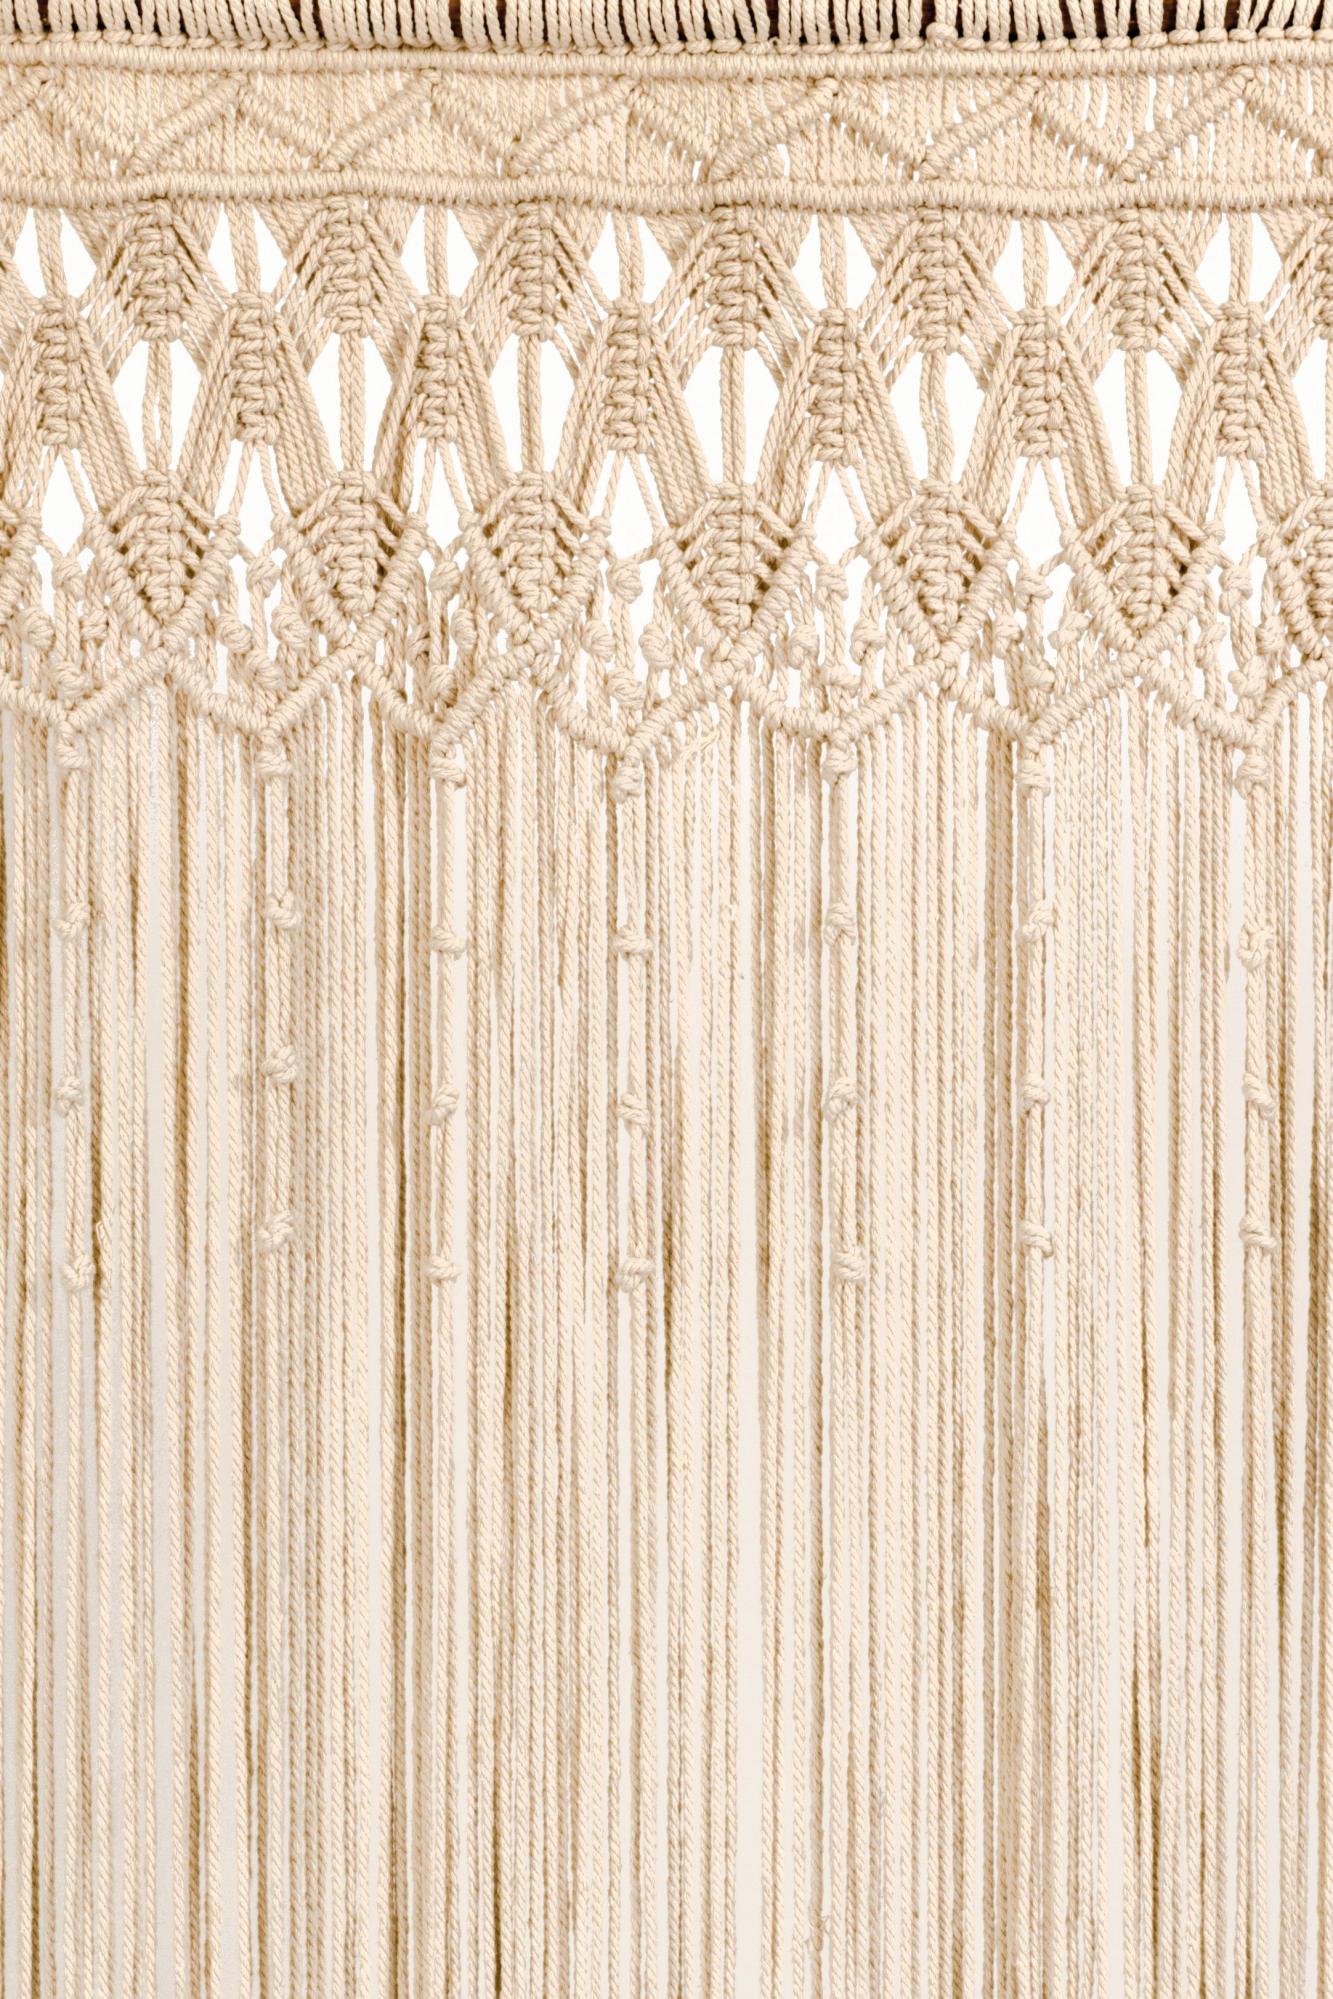 Rideau de porte cordage blanc l.90 x H.200 cm